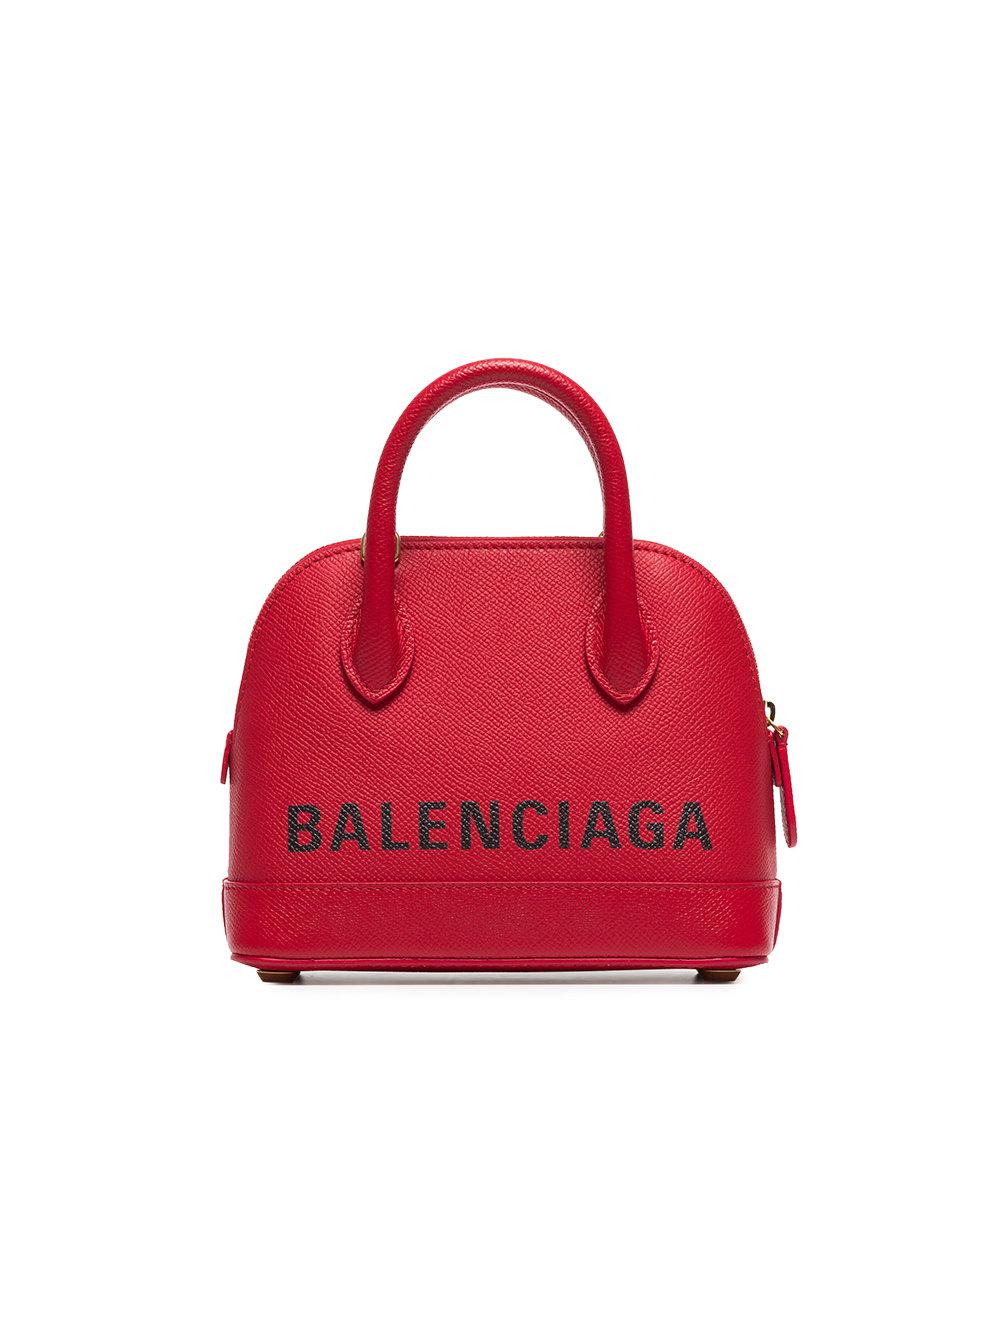 Balenciaga Xxs Ville Top Handle Bag In Cream & White